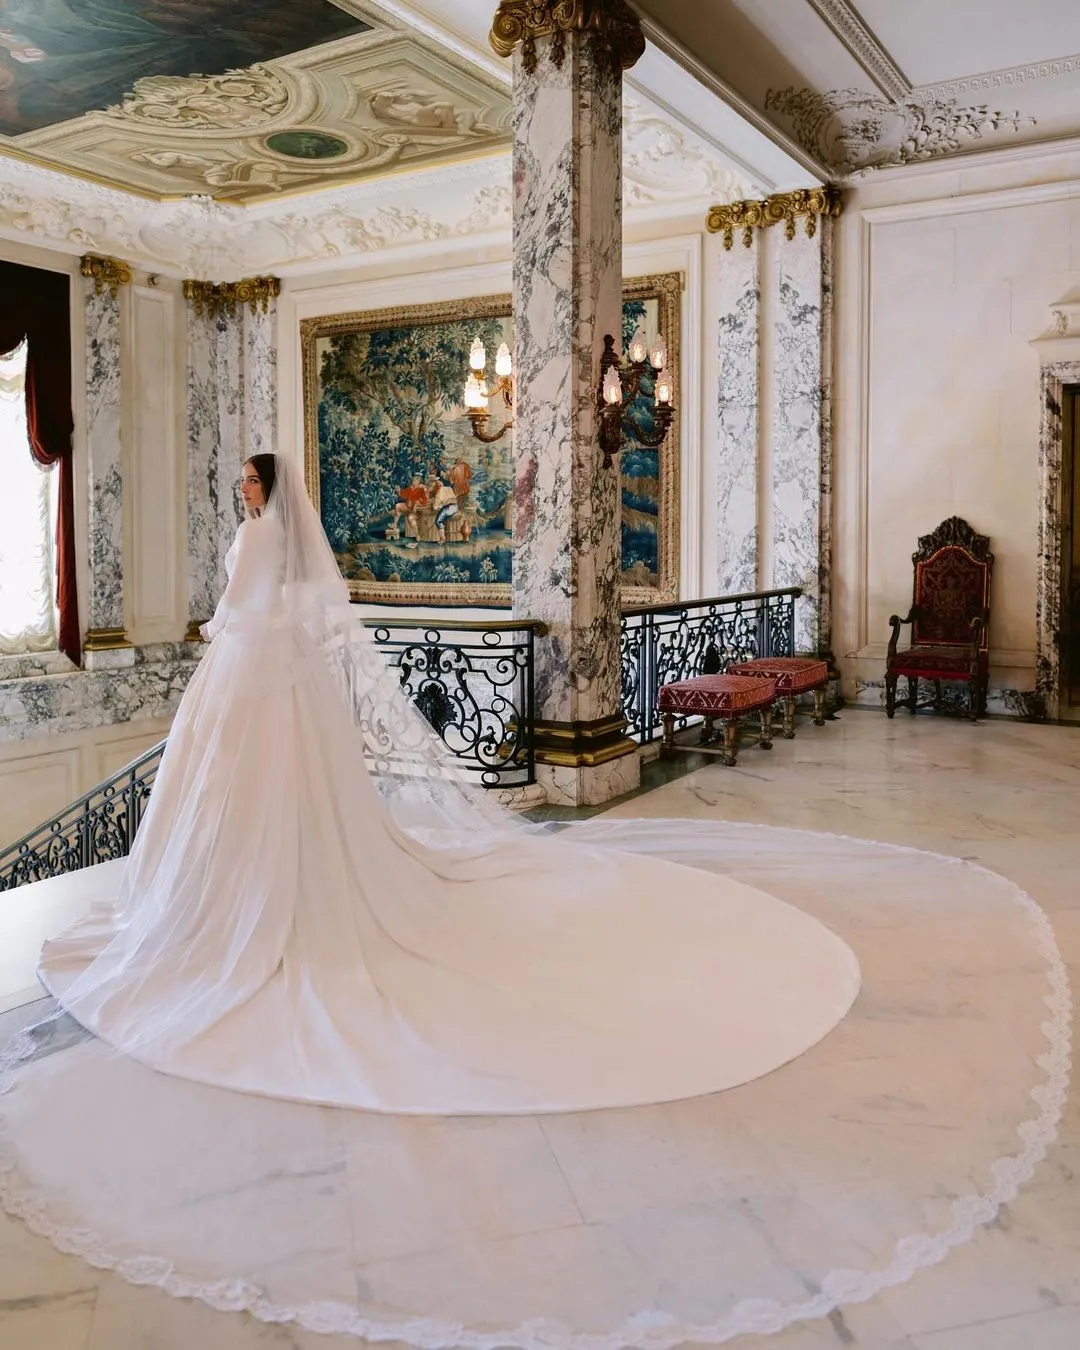 "Мисс Вселенная-2012" вышла замуж за футболиста: как выглядело свадебное платье Оливии Калпо. Фото